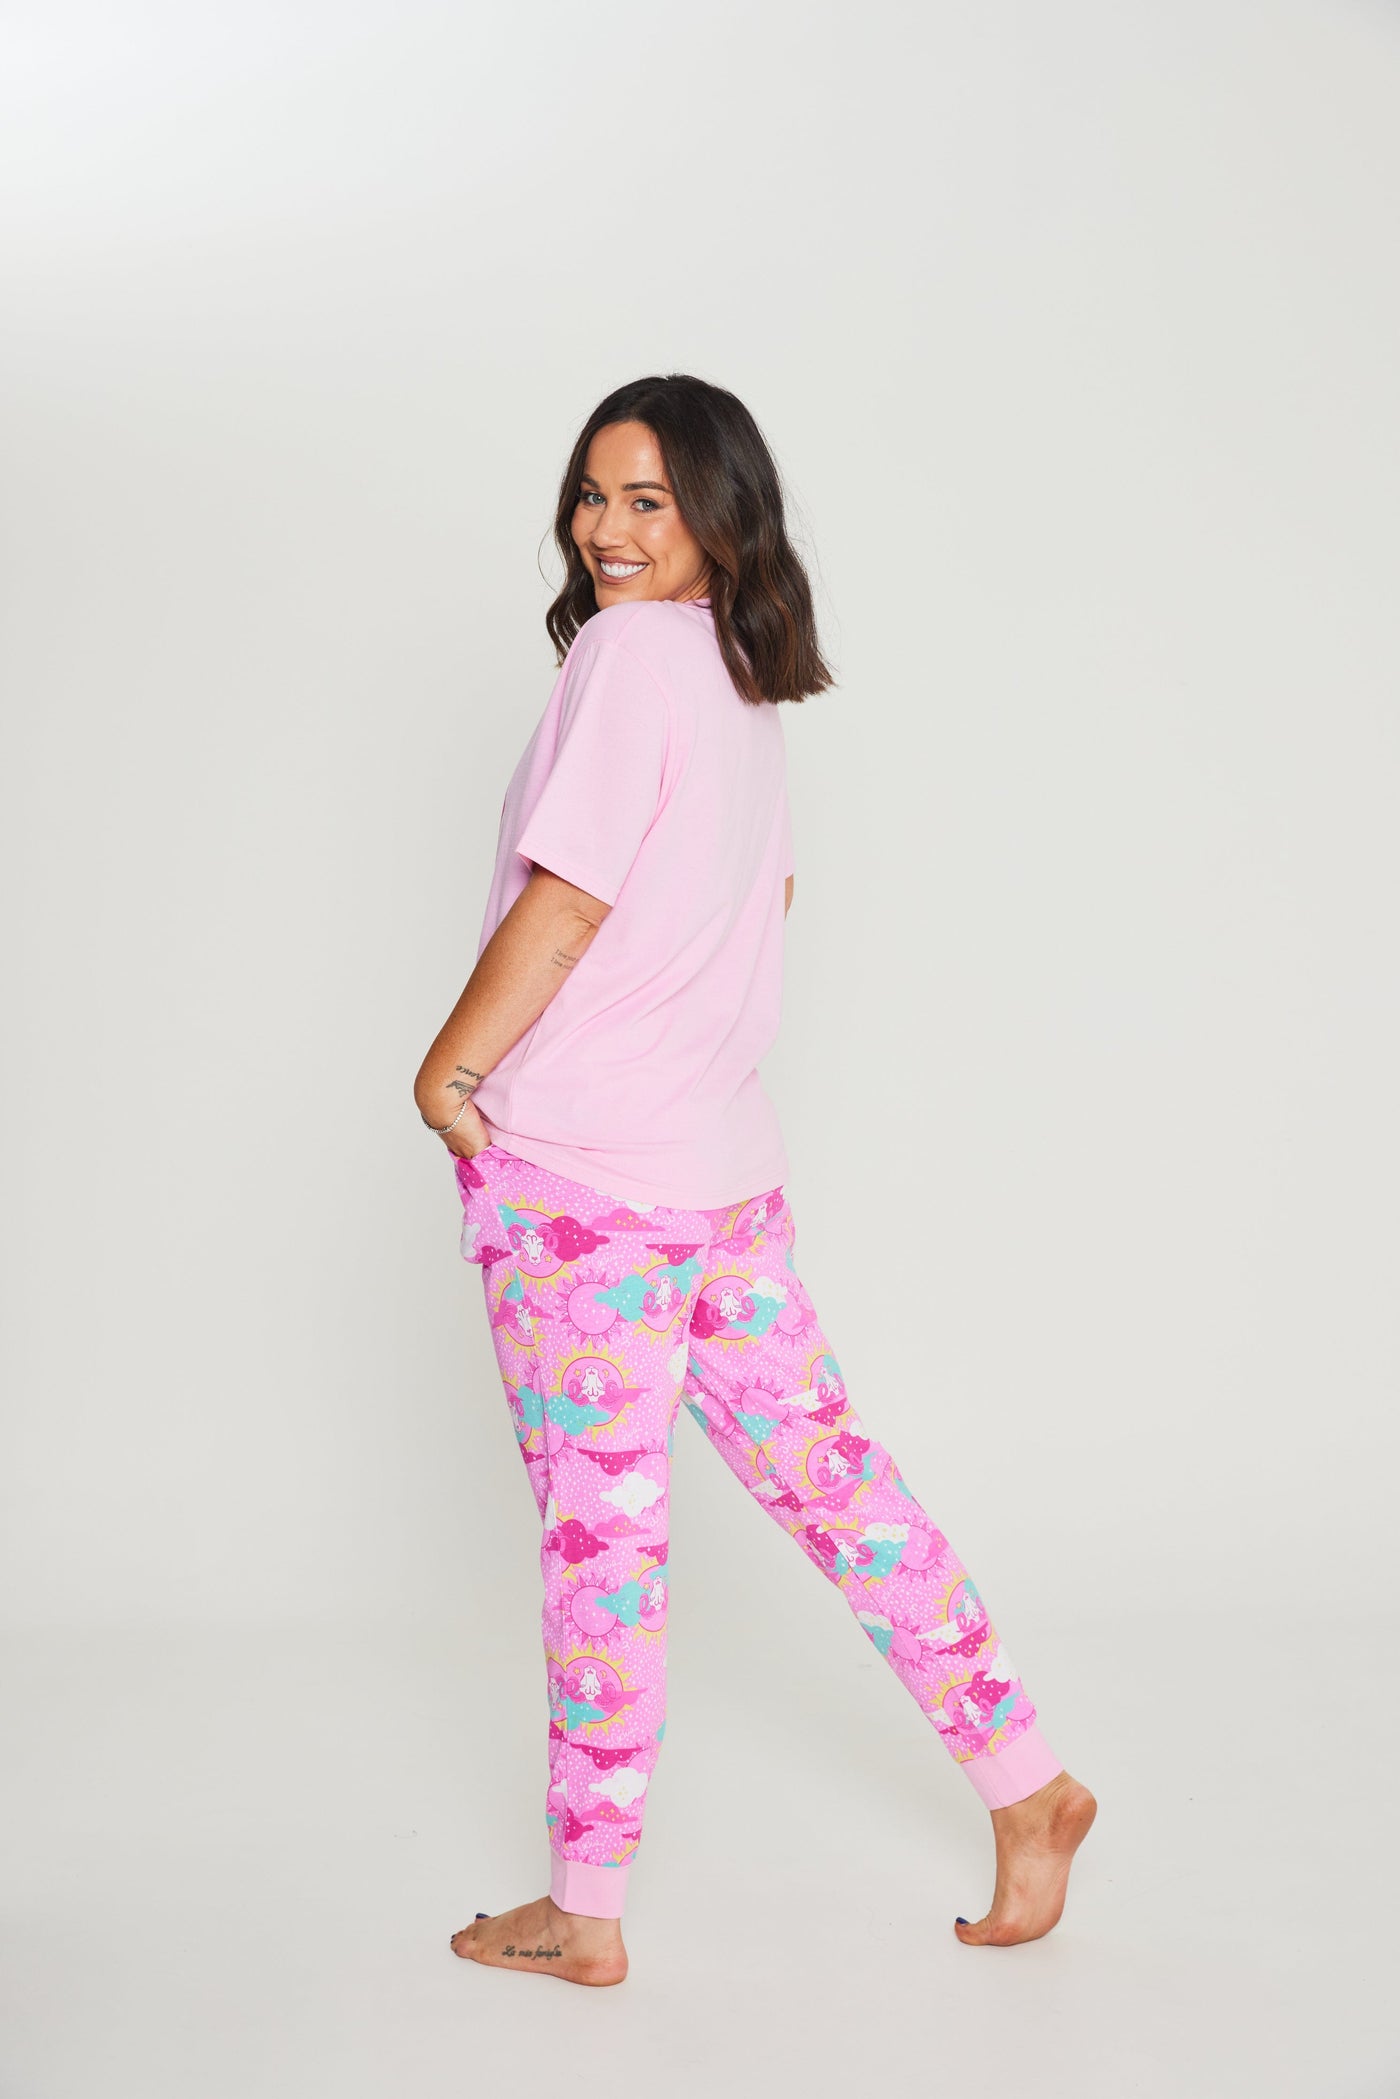 Cachia Aries - Zodiac Pyjama Bundle Pajamas